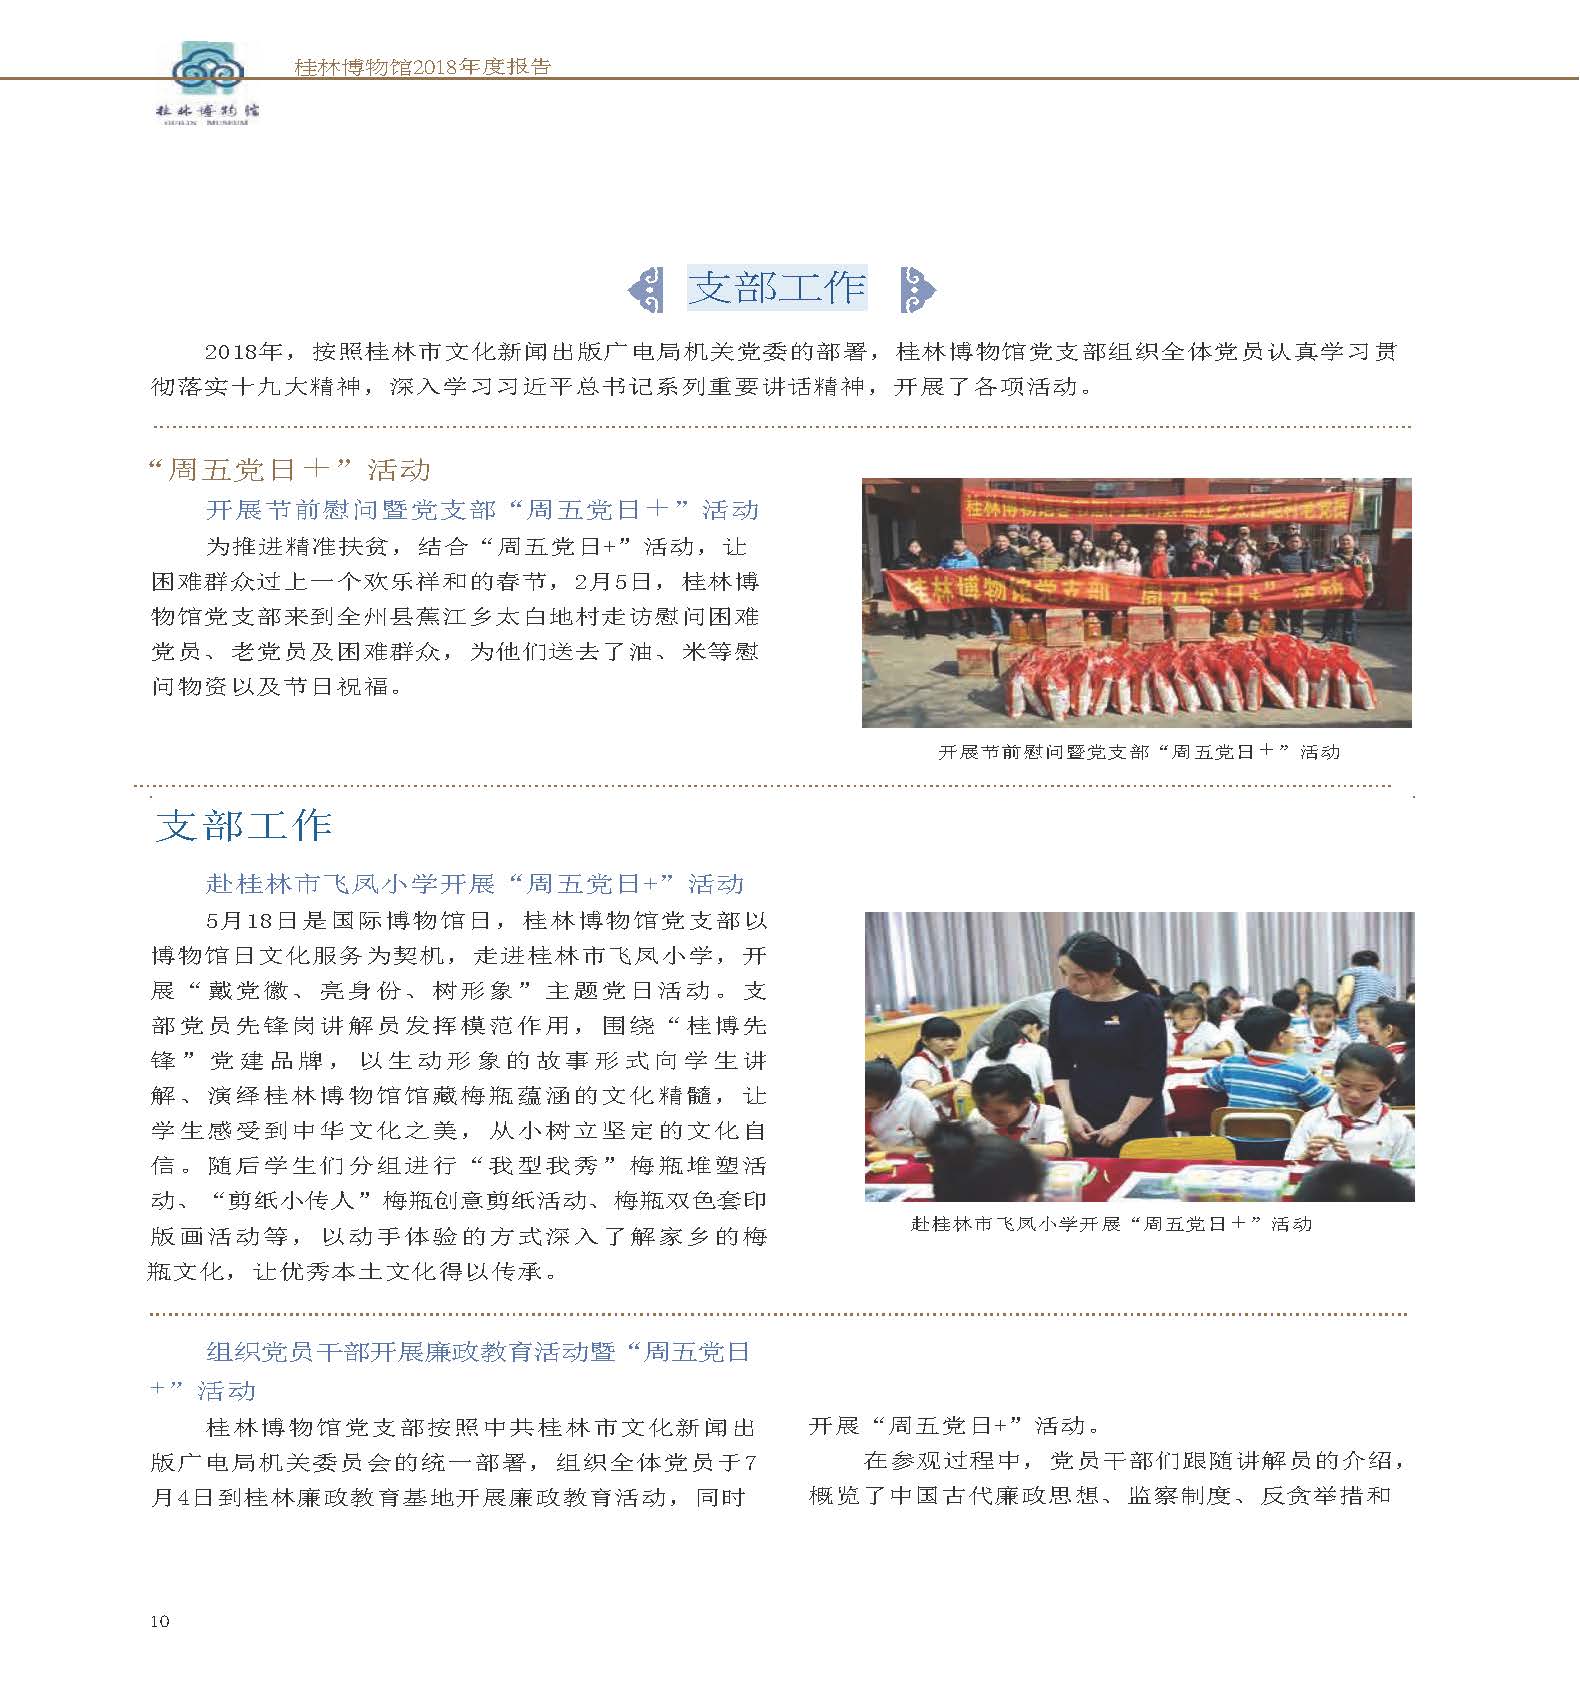 桂林博物馆2018年度报告.pdf_页面_012.jpg